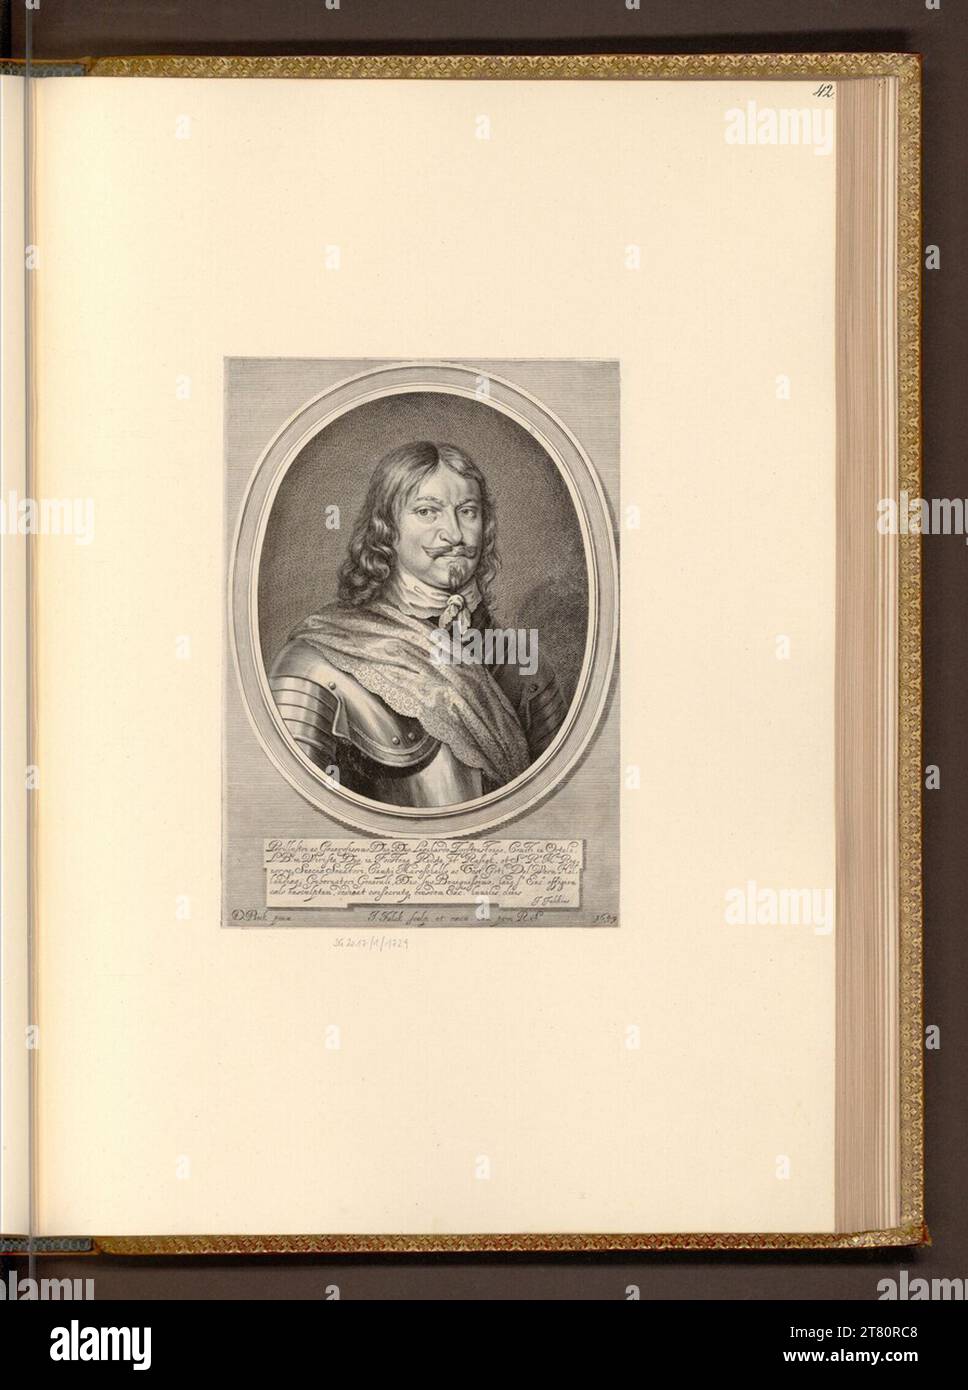 Jeremias Falck (graveur) Leonhard Torstenson Maréchal suédois. Gravure sur cuivre, gravure 1649, 1649 Banque D'Images